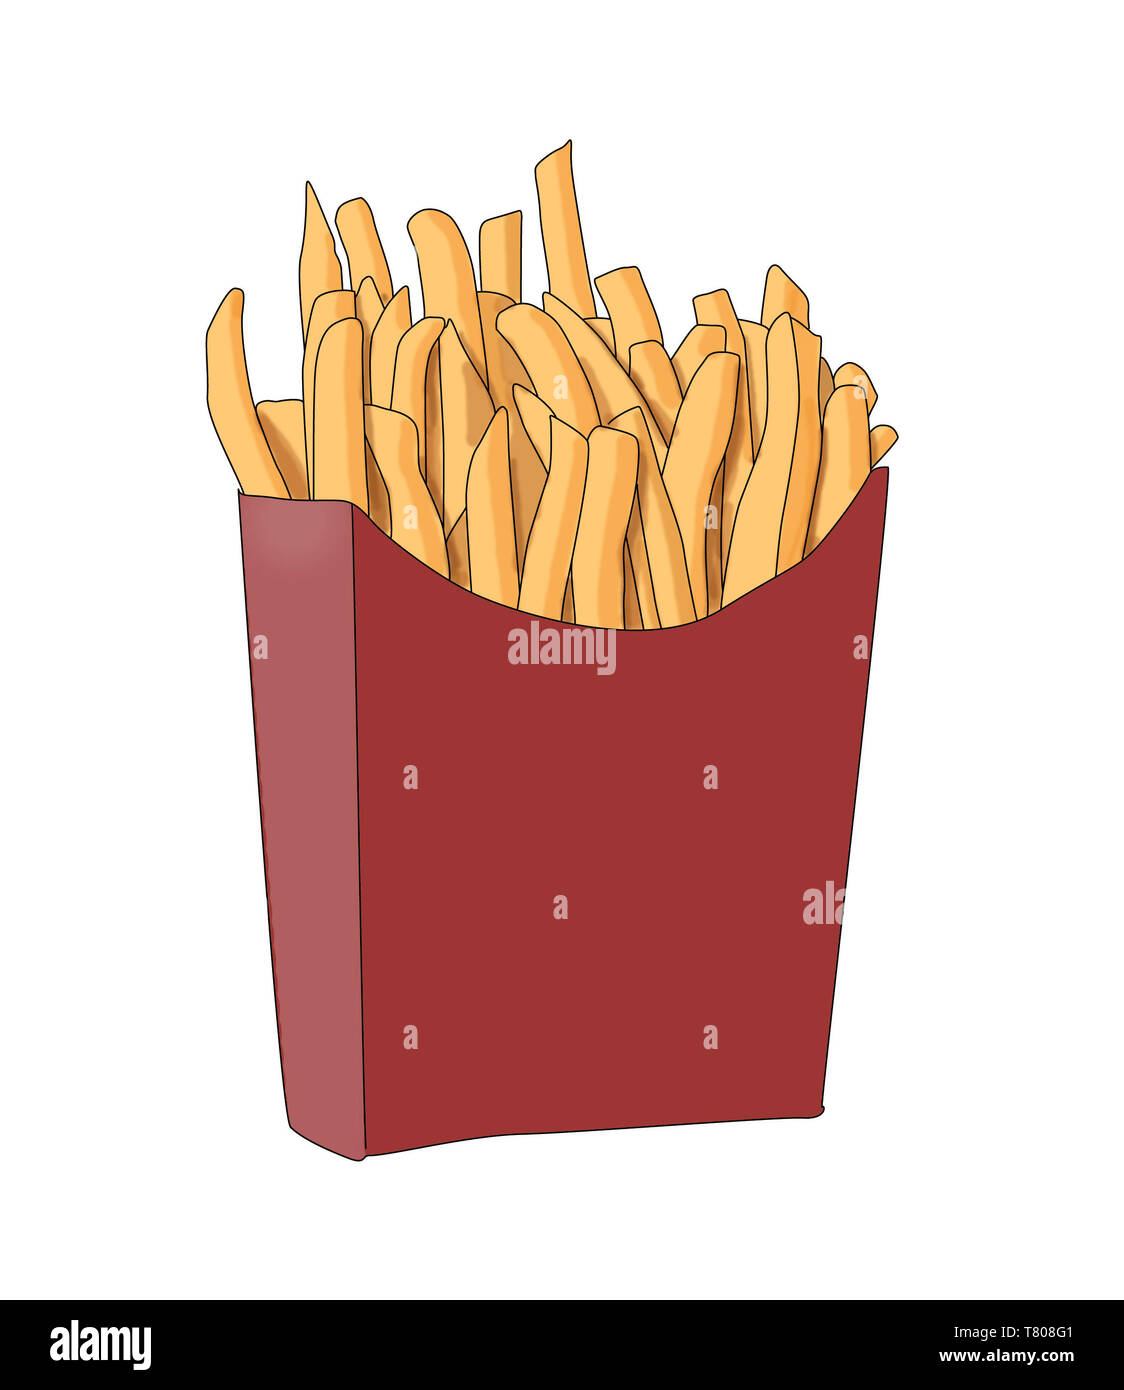 Las papas fritas, la comida chatarra, ilustración Foto de stock